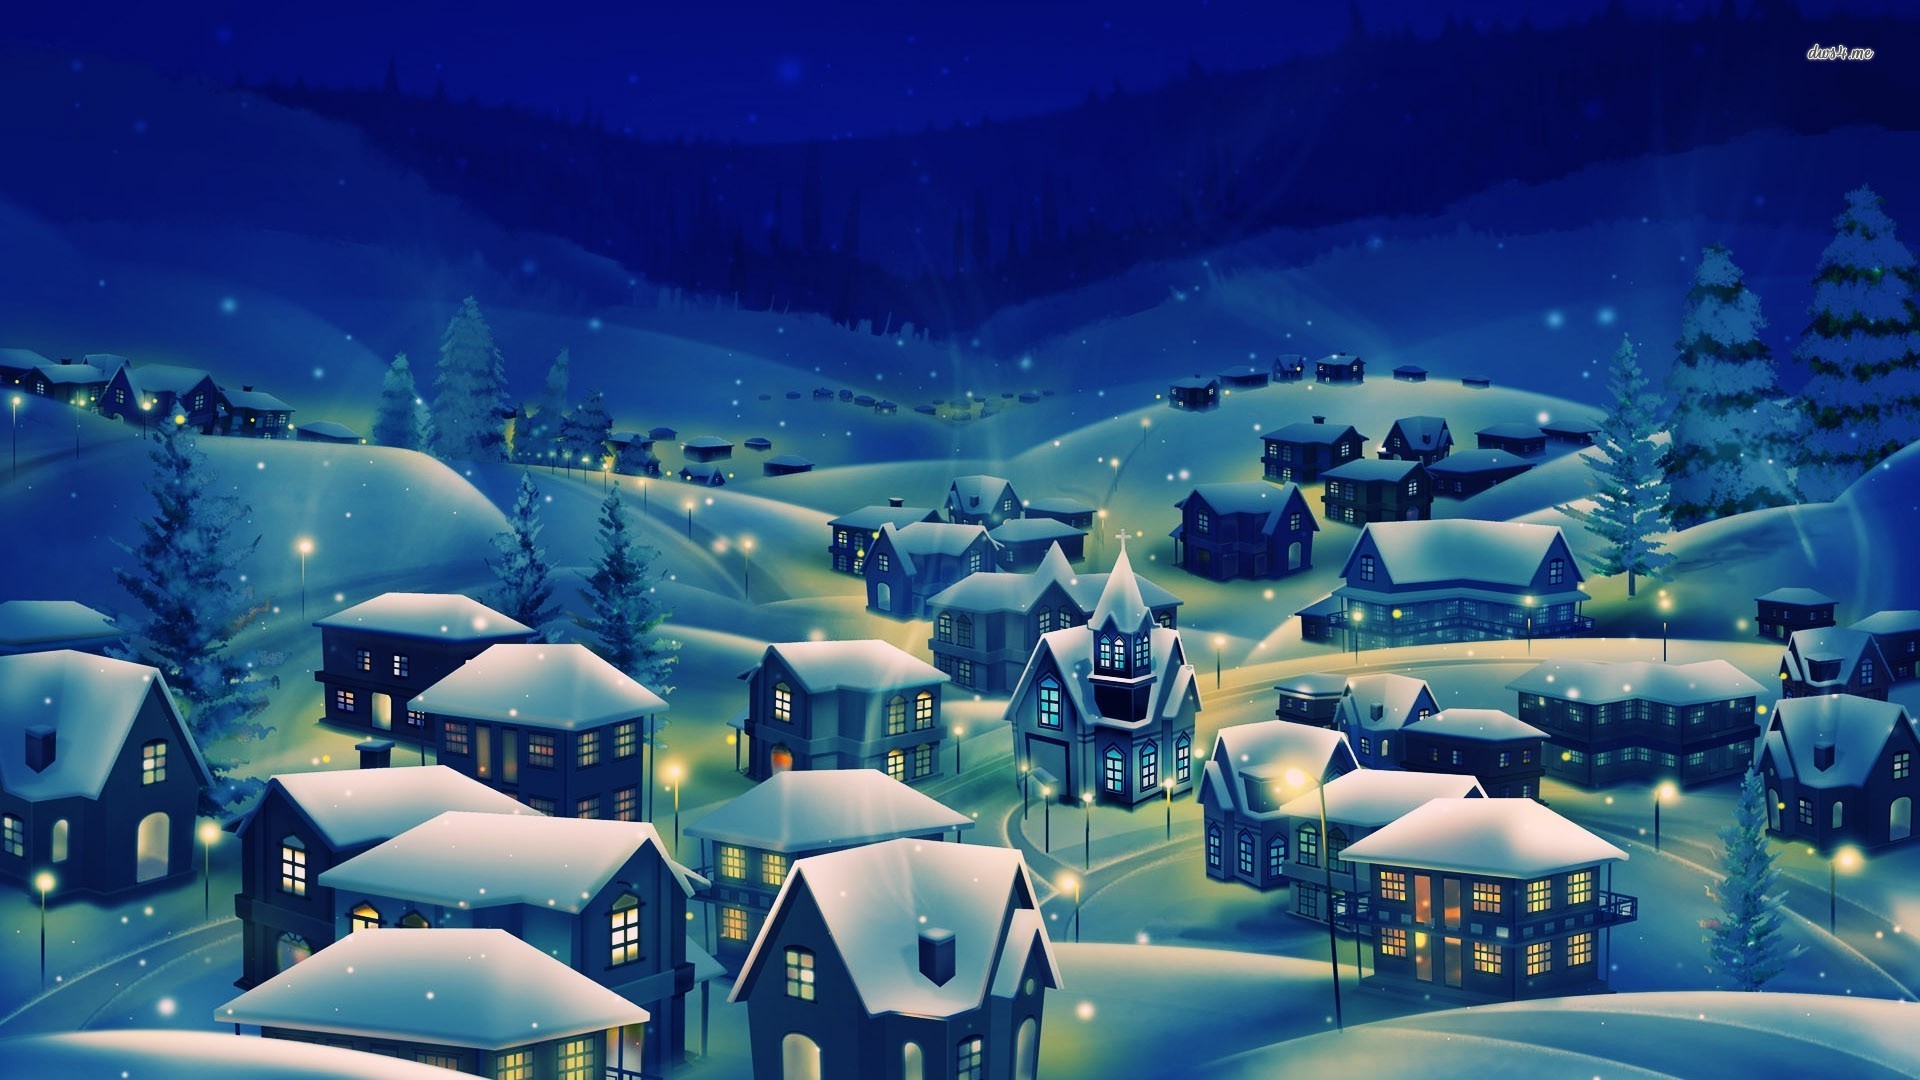 Snowy Village At Night Wallpaper